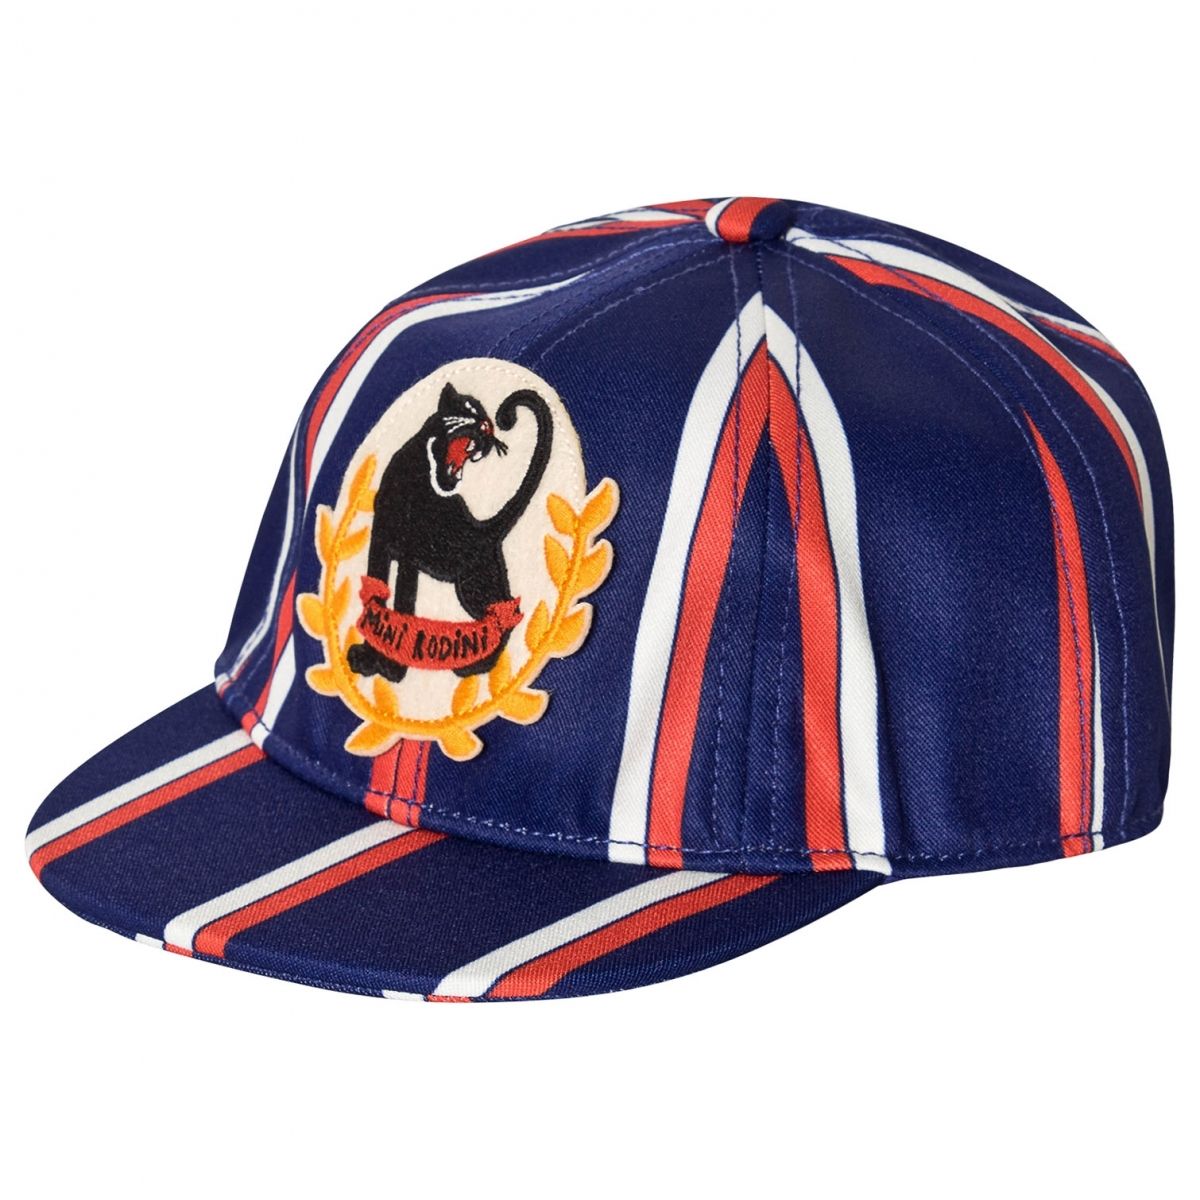 Mini Rodini - Czapka z daszkiem Badge cap niebieska - Czapki i kapelusze - 2026510760 